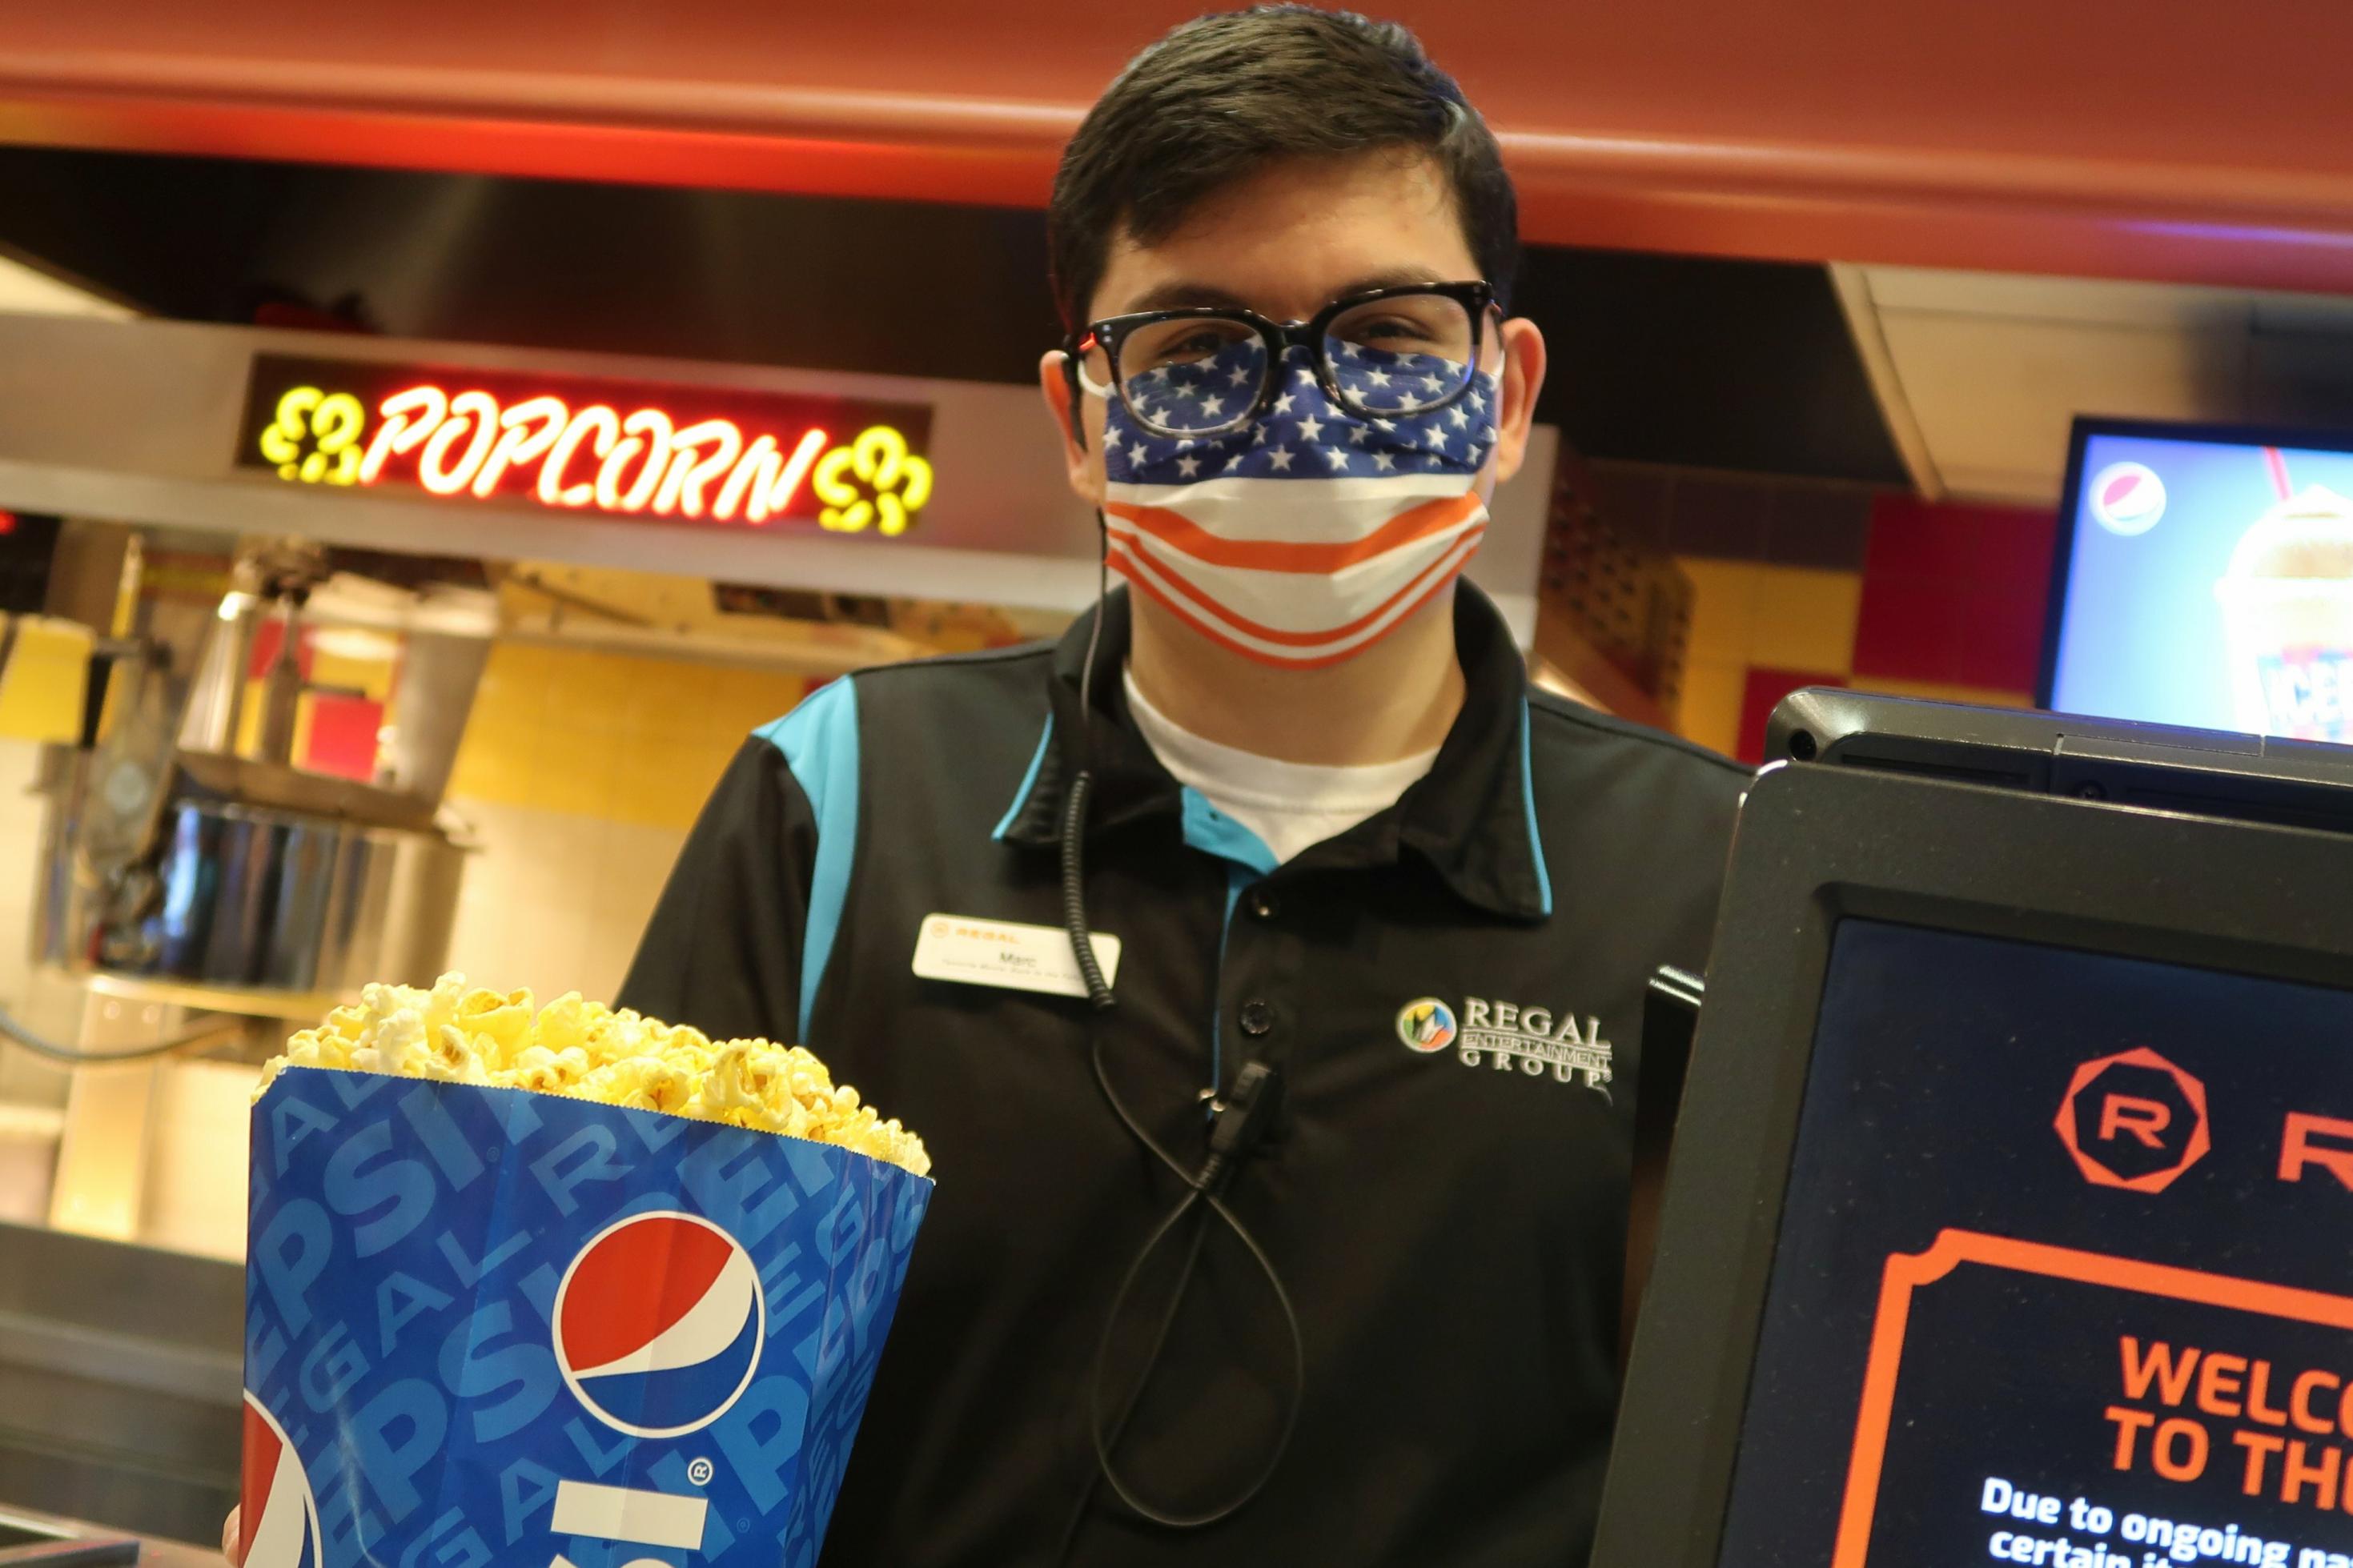 Ein Verkäufer, der eine Maske trägt, überreicht im Kino eine Tüte Popcorn.